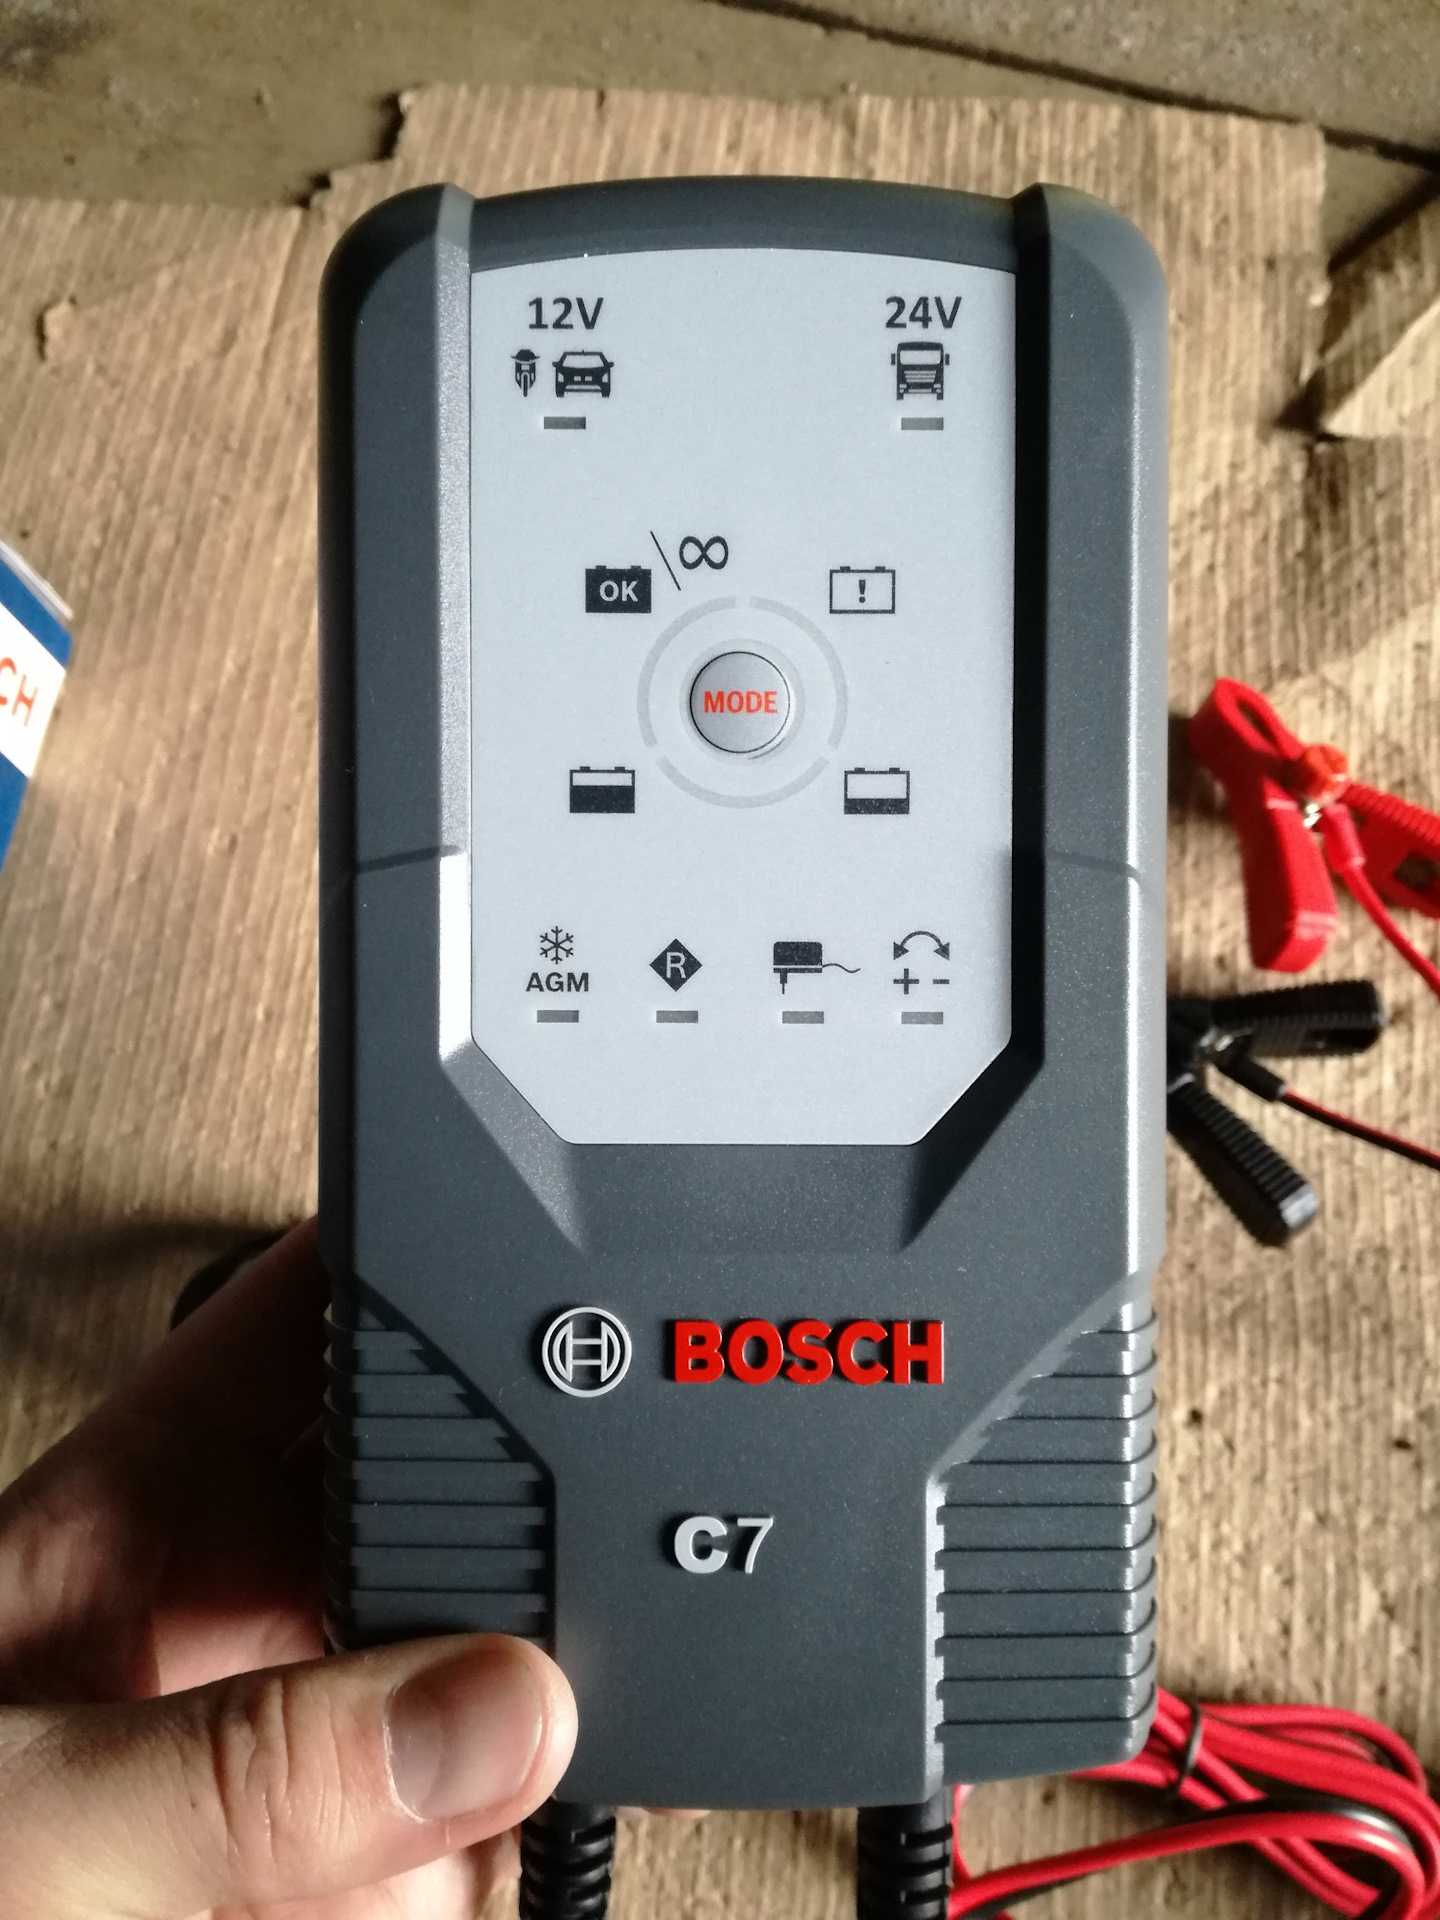 Bosch C7 - короткий но максимально информативный обзор Для большего удобства добавлены характеристики отзывы и видео